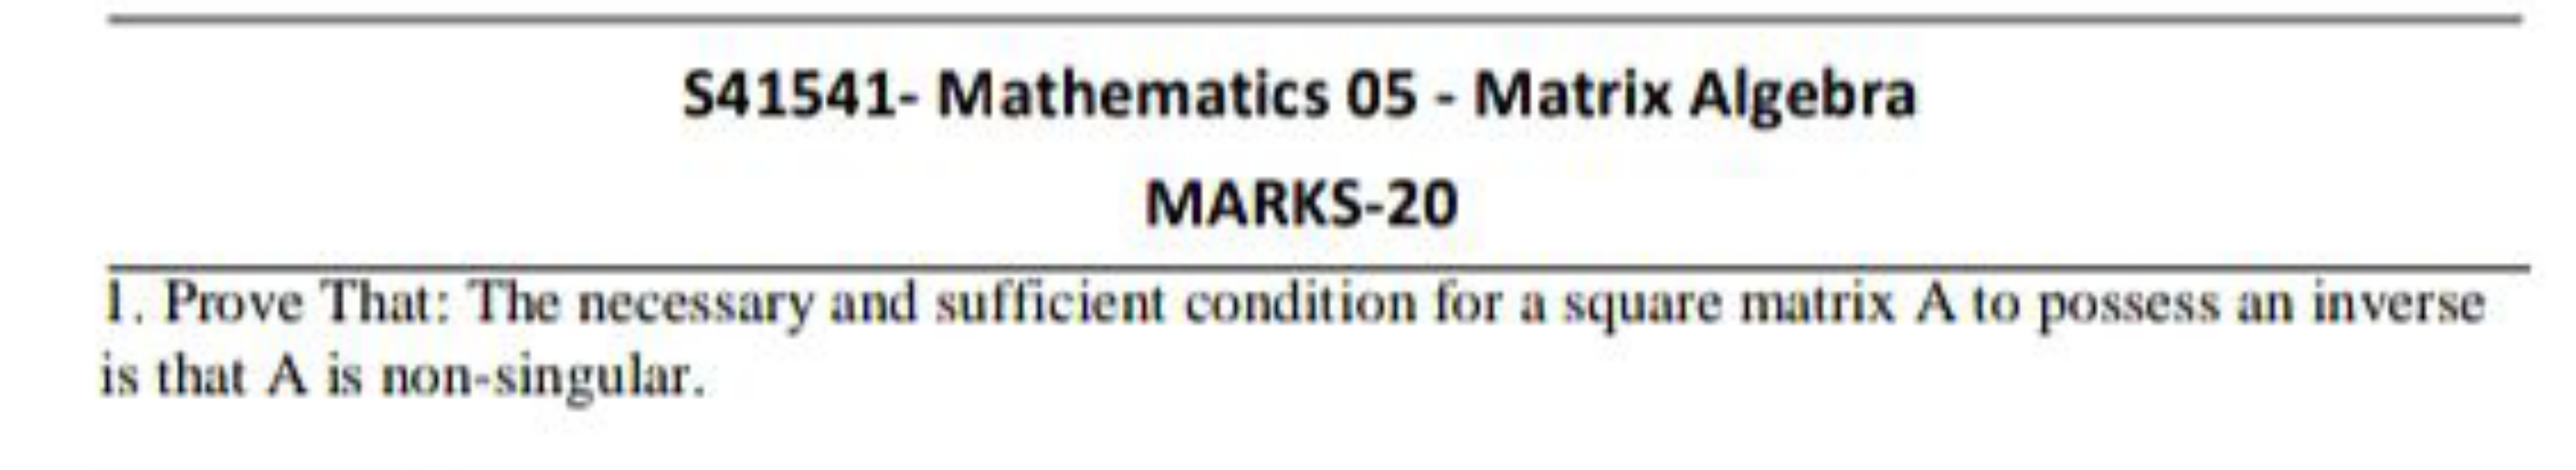 S41541- Mathematics 05 - Matrix Algebra
MARKS-20
1. Prove That: The ne